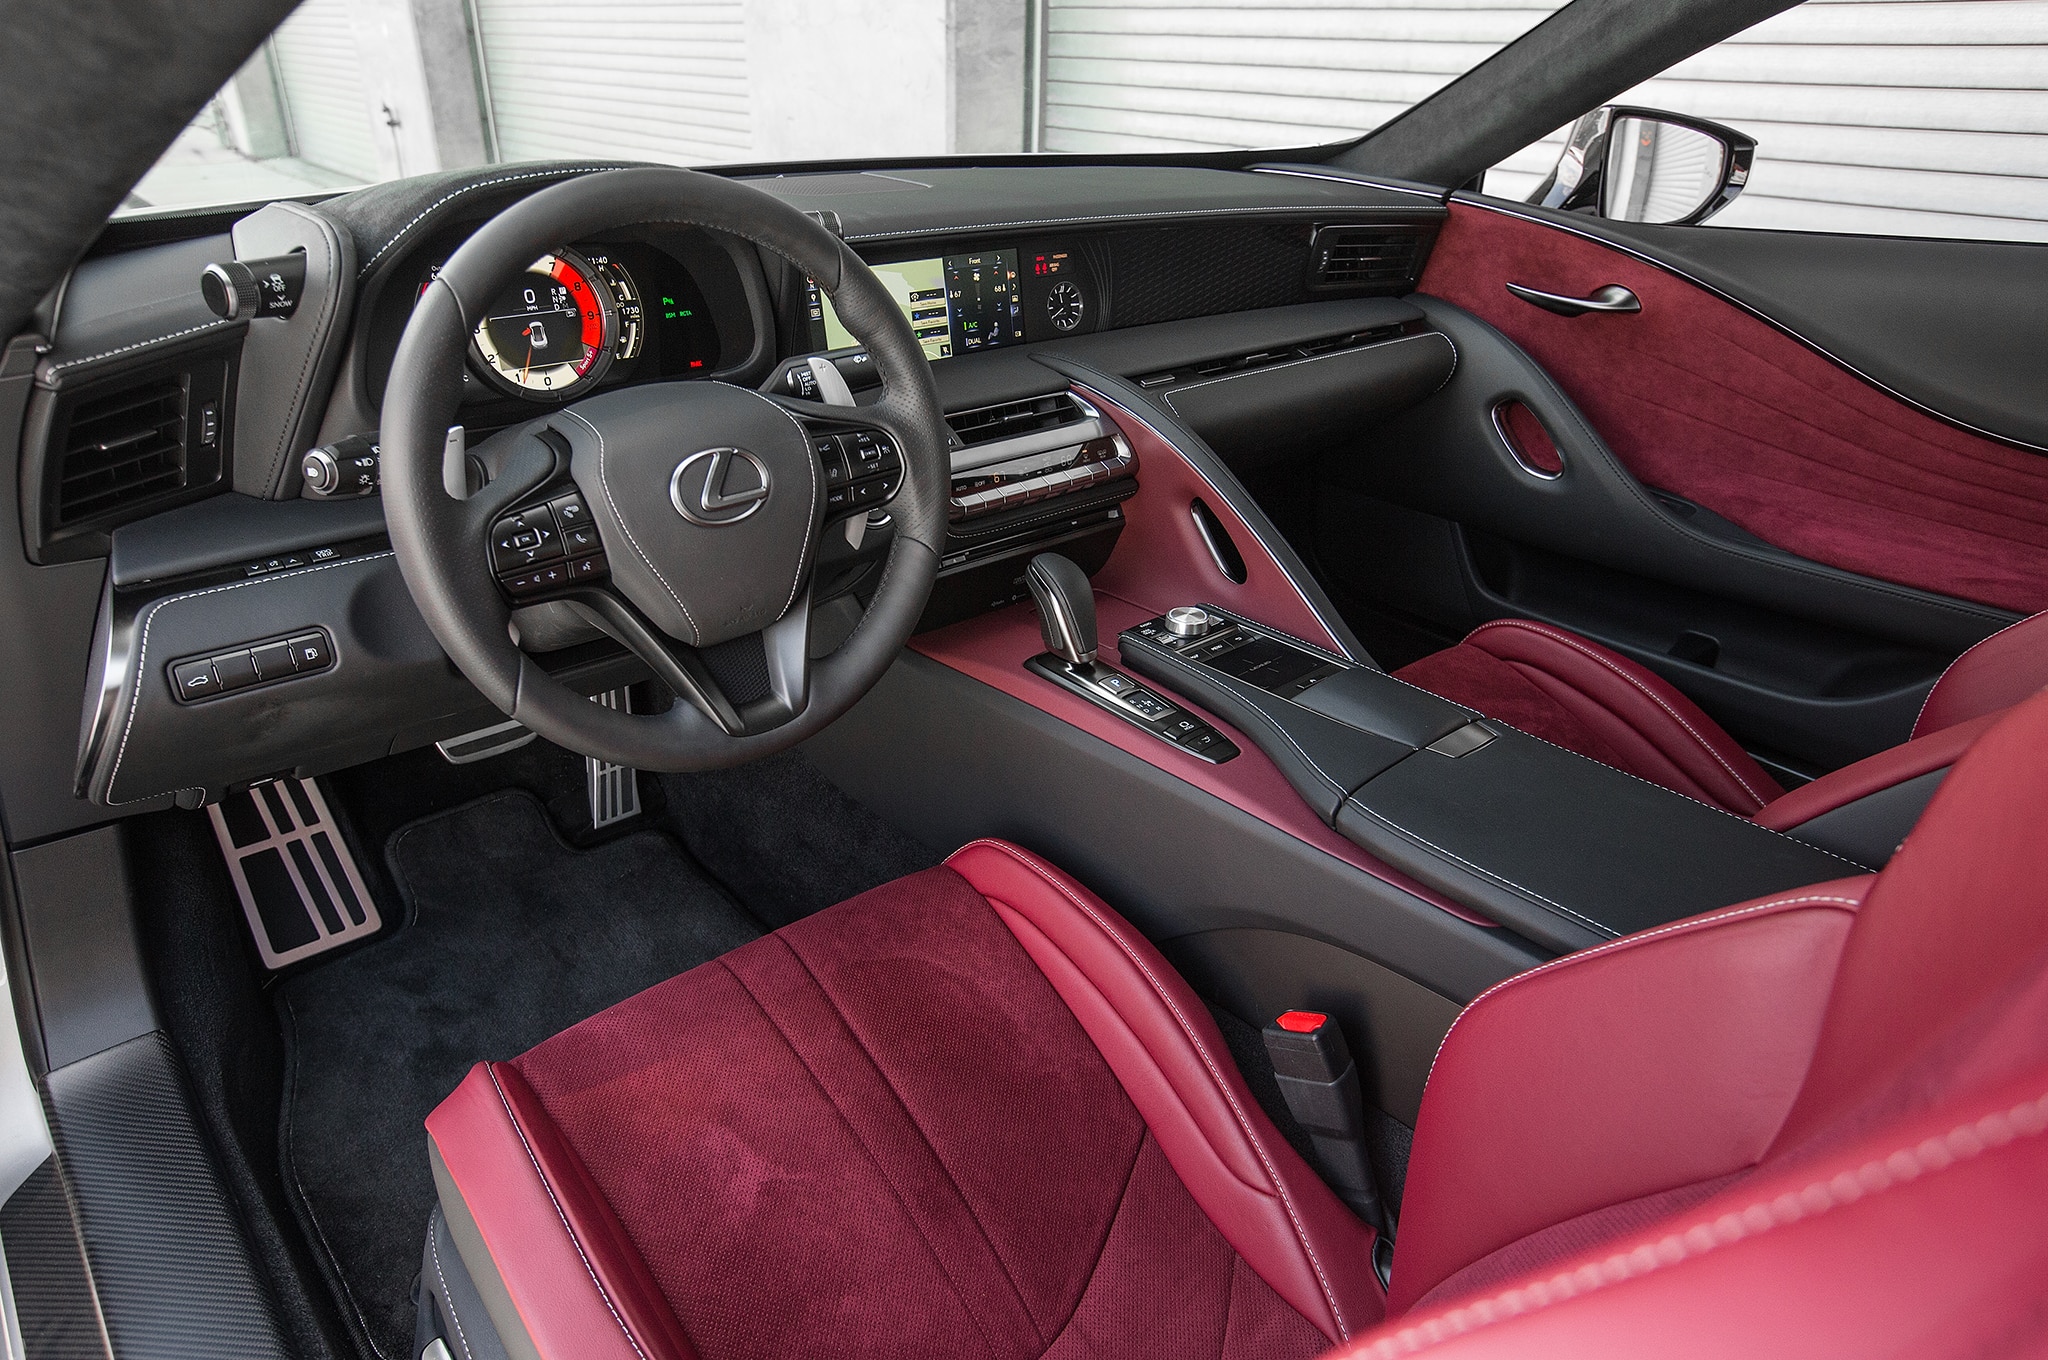 2018 Lexus LC 500 interior detail